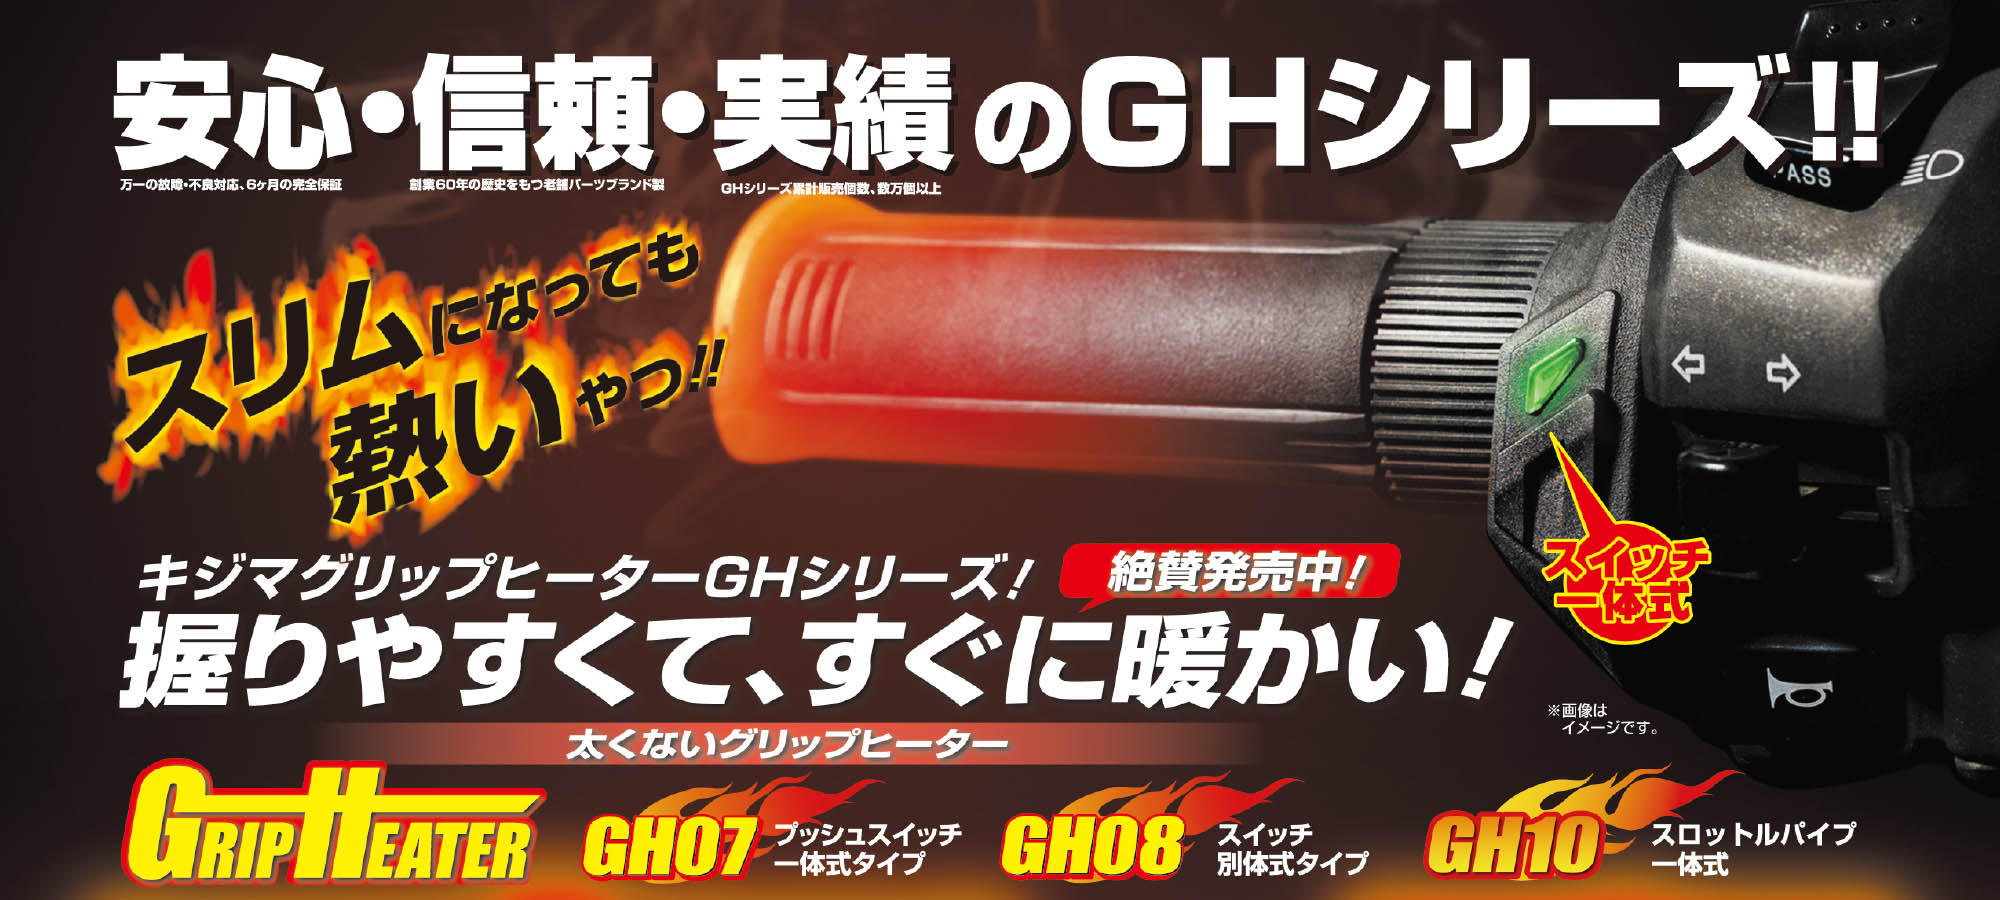 グリップヒーター GH05 GH07 GH08 GH10